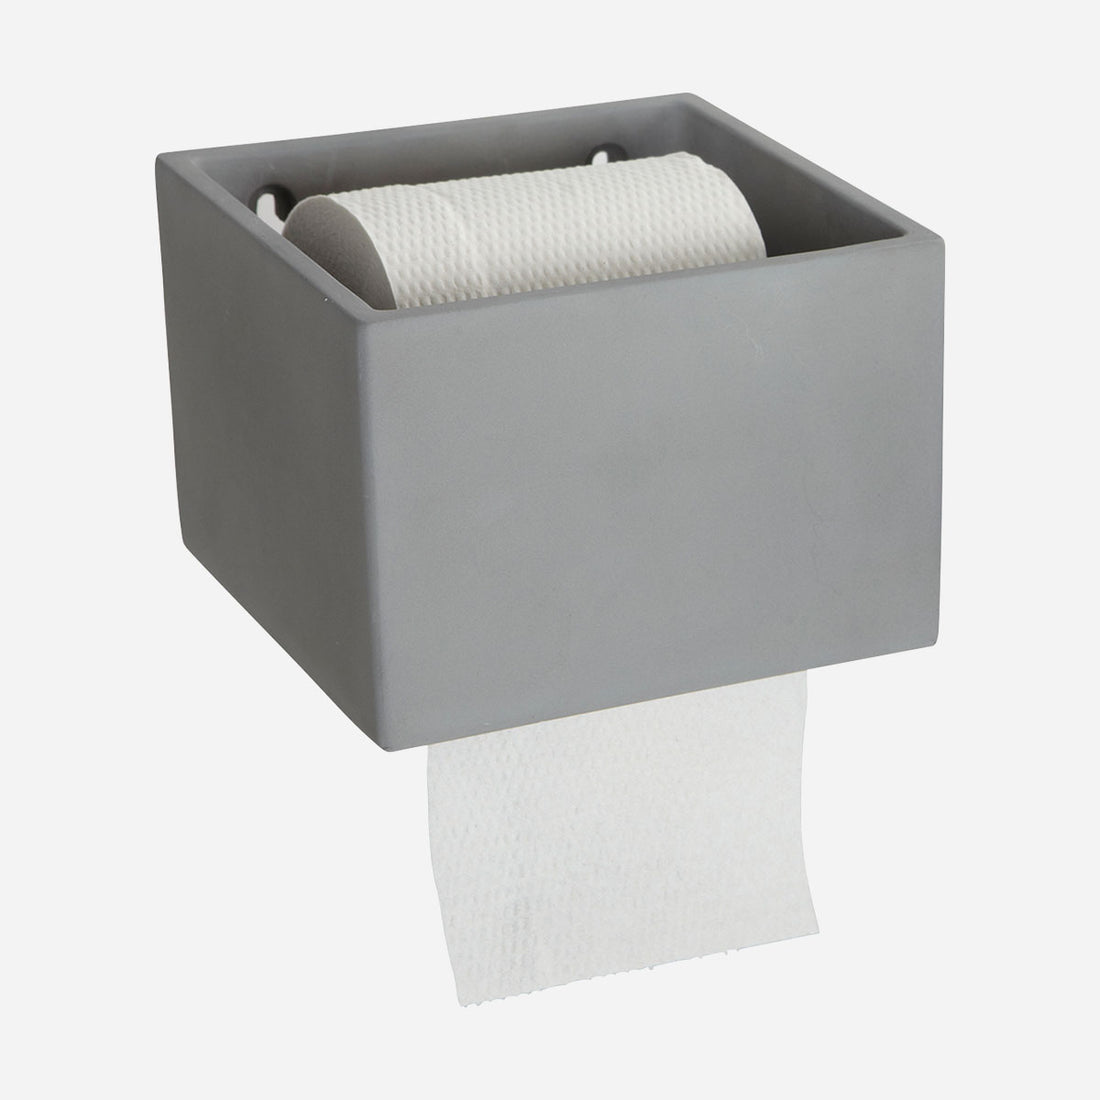 House Doctor-toilet paper holder, cement-l: 15 cm, w: 14.5 cm, h: 10.5 cm